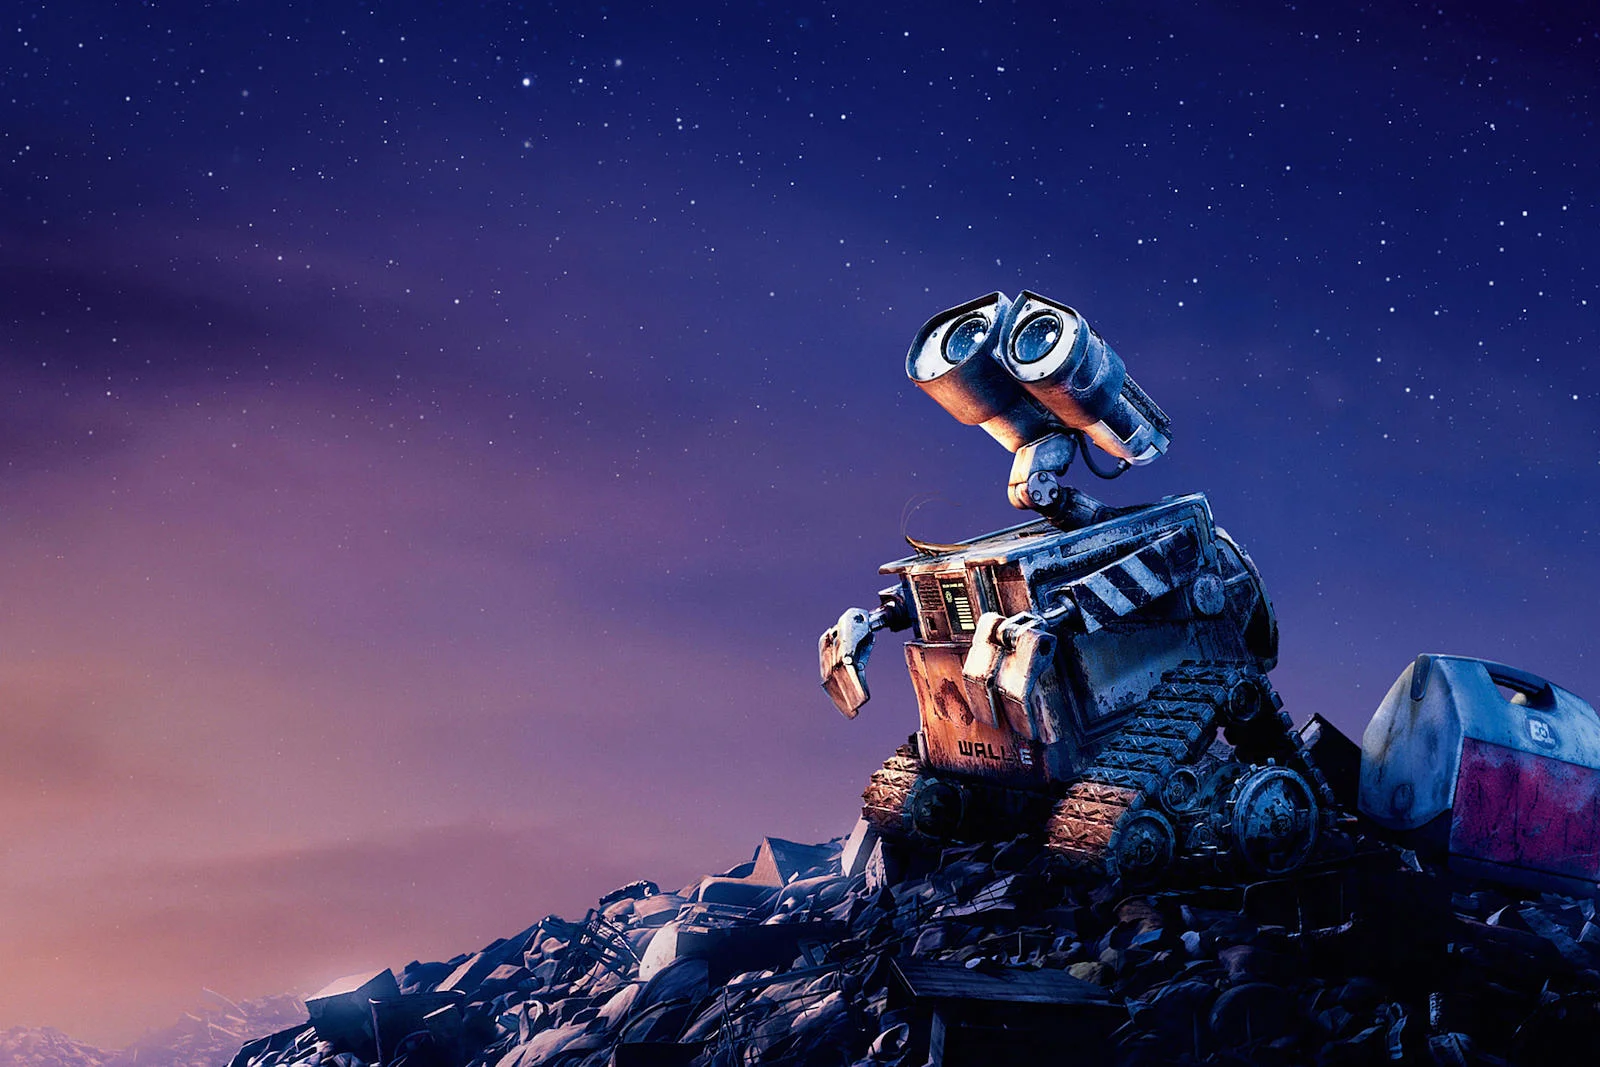 Что смотреть к выходу «Базза Лайтера»: все мультфильмы Pixar, от любимчиков до изгоев - фото 22